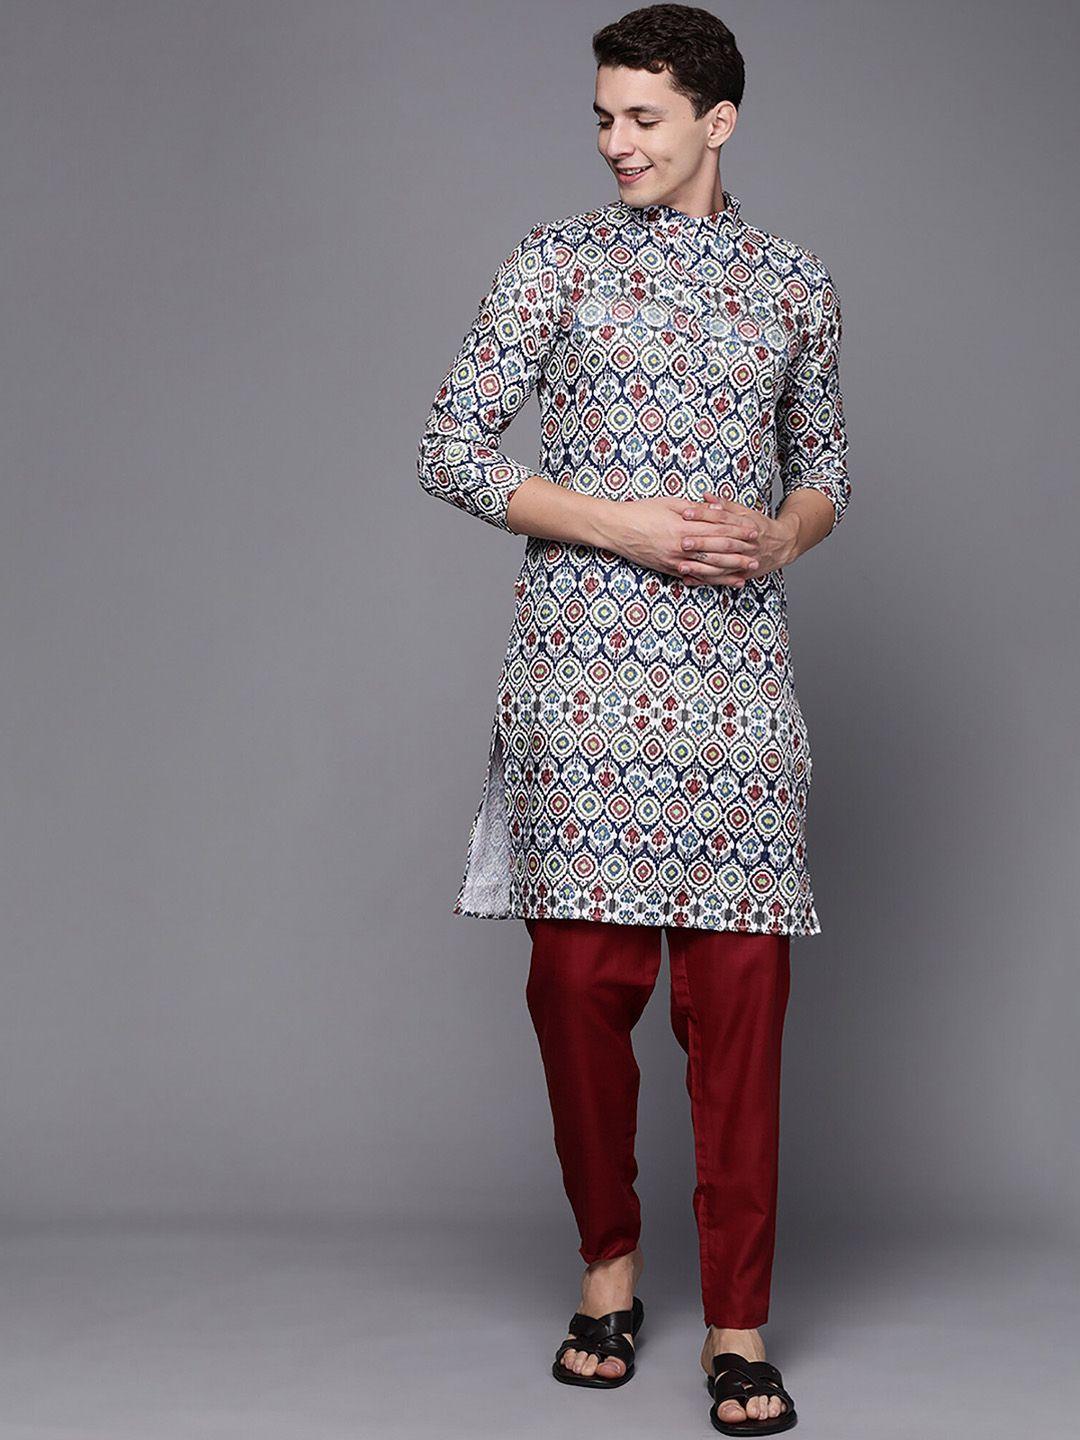 indo era white & red ethnic motifs printed cotton straight kurtas